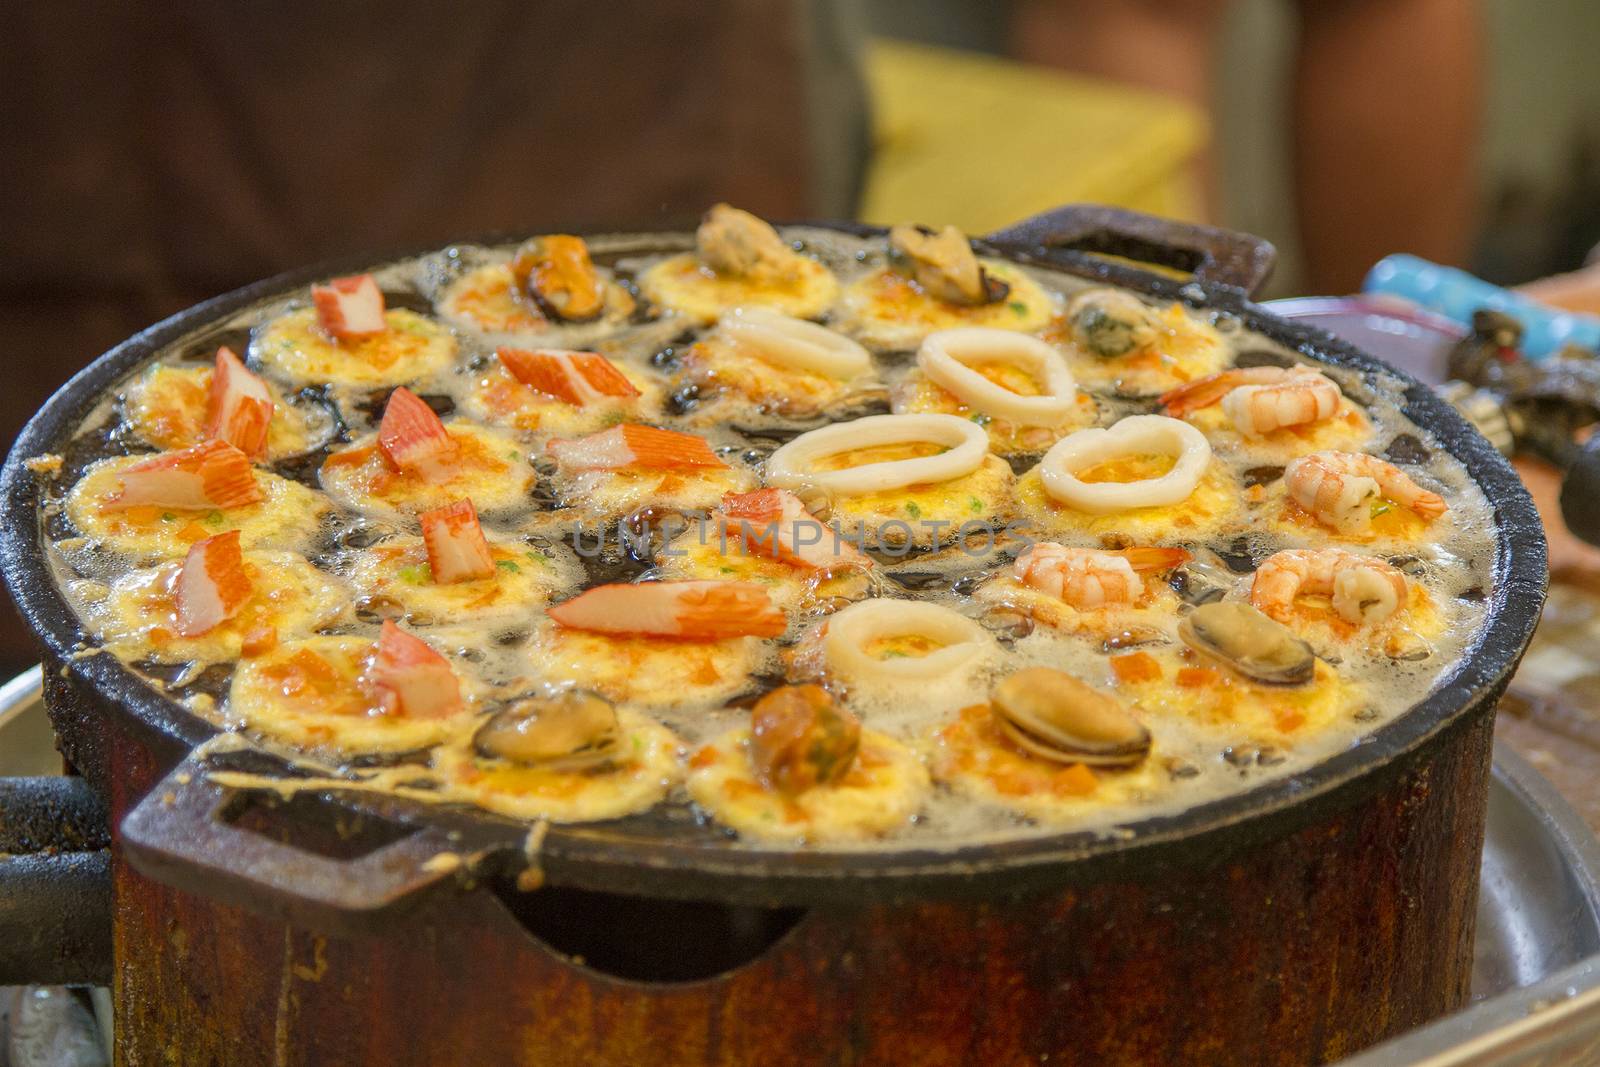 Thai-style takoyaki with mussels